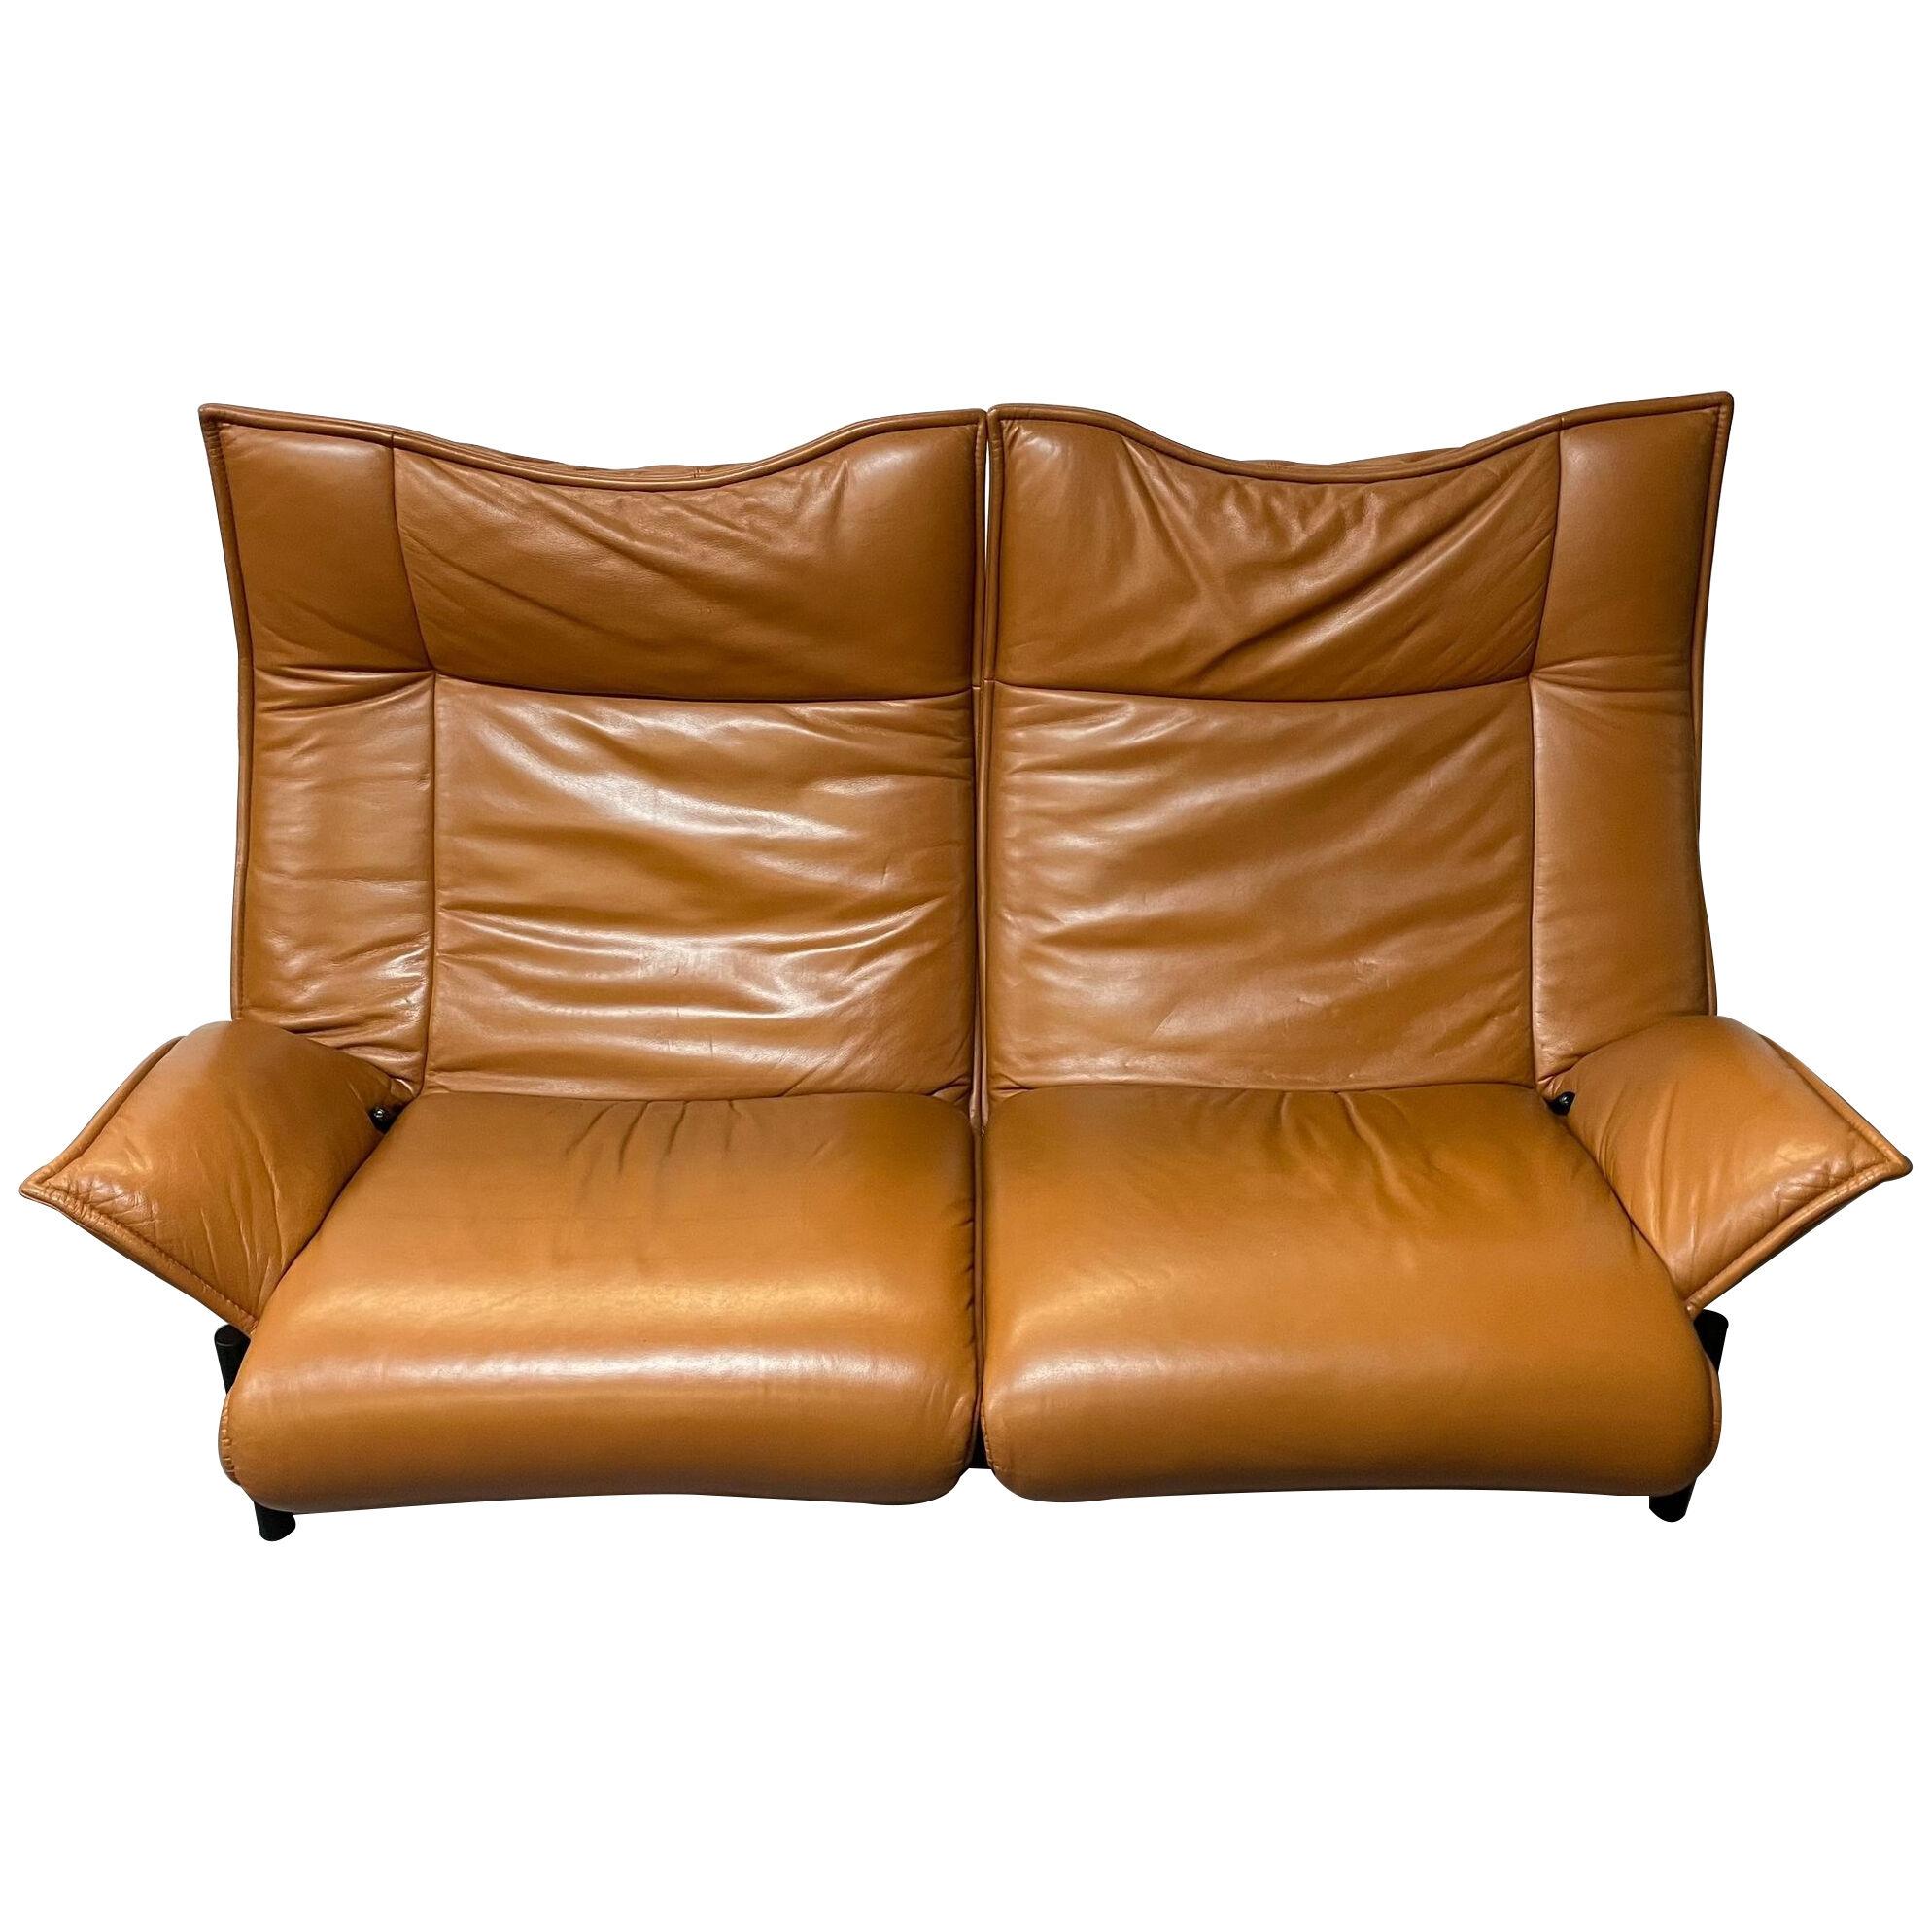 Vico Magistretti for Cassina Veranda Sofa, Two-Seater, Leather, Italian Modern